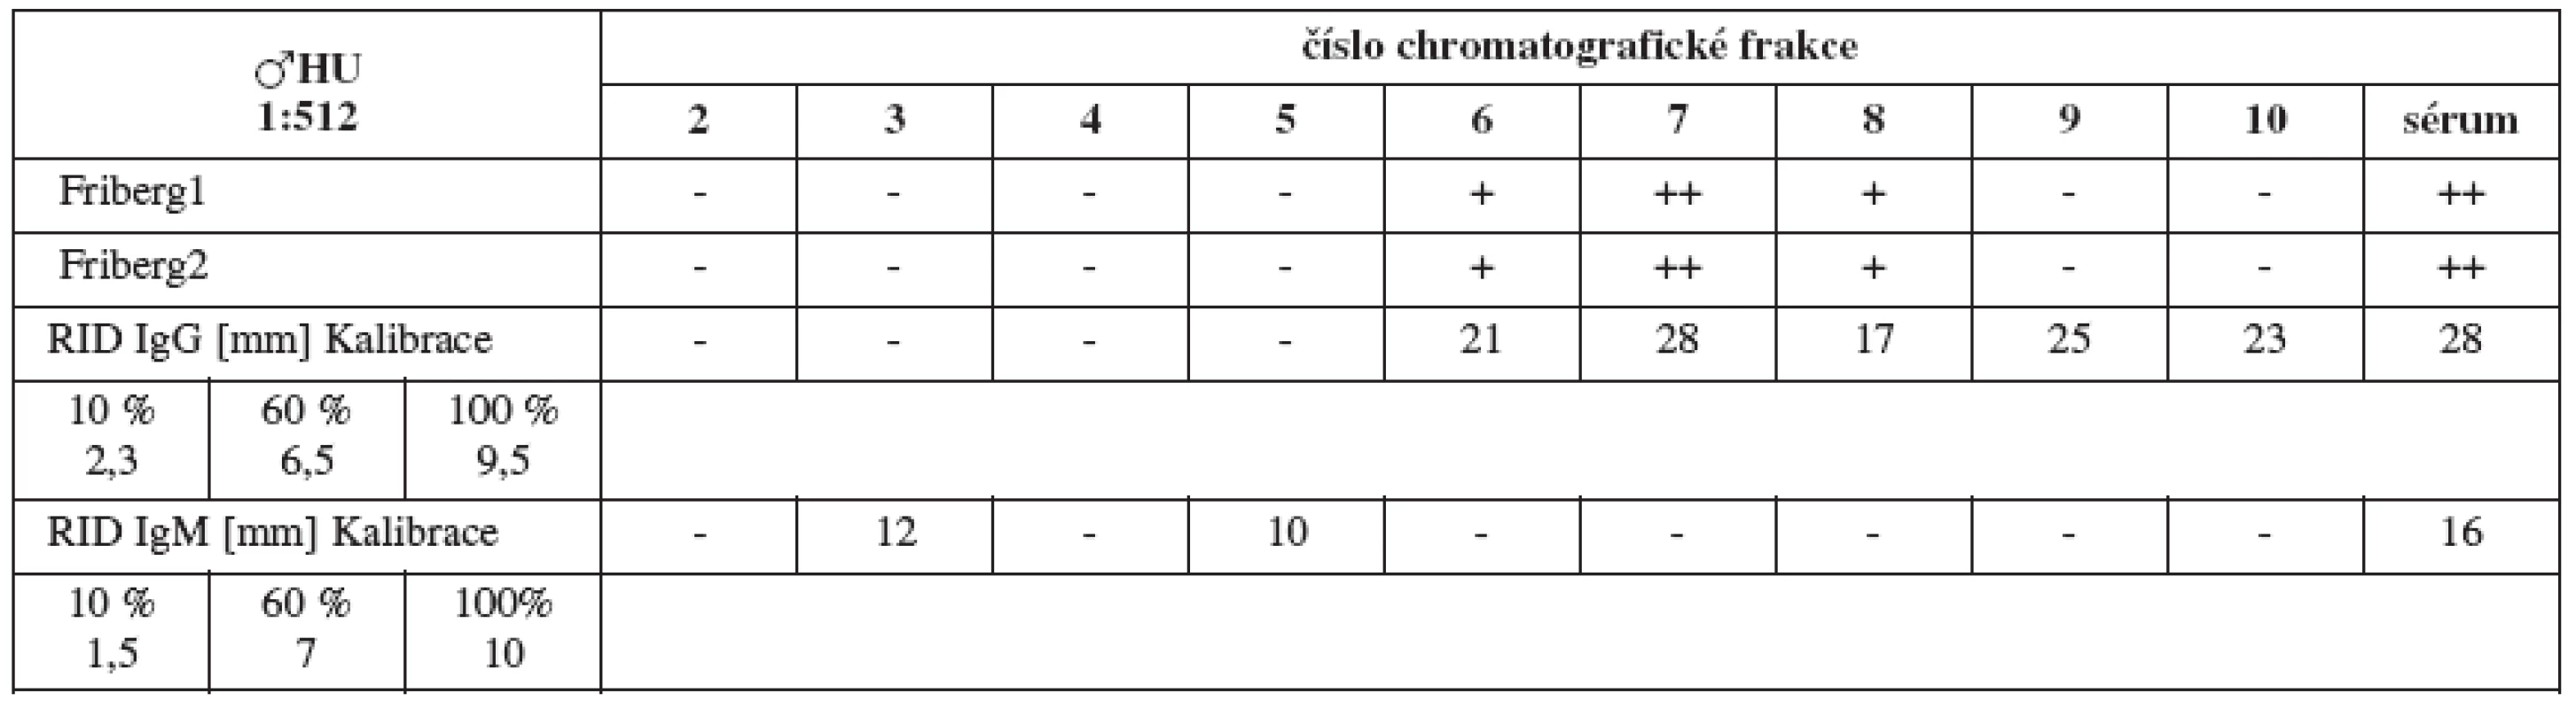 Srovnání výsledků Fribergova testu pro jednotlivé chromatografické frakce séra HU a radiální imunodifuze